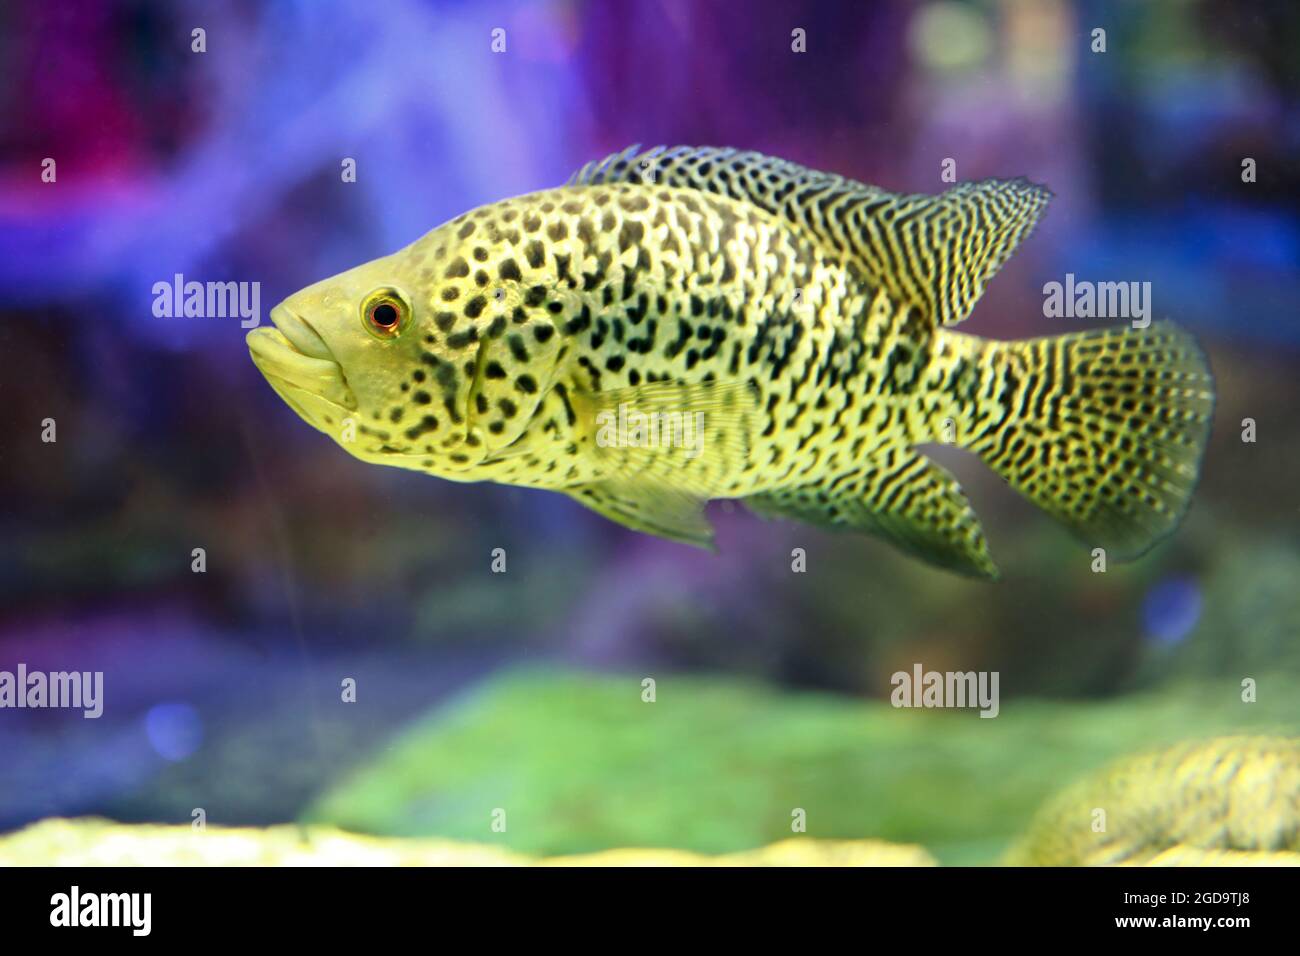 View of Cichlasoma managuense fish in aquarium Stock Photo